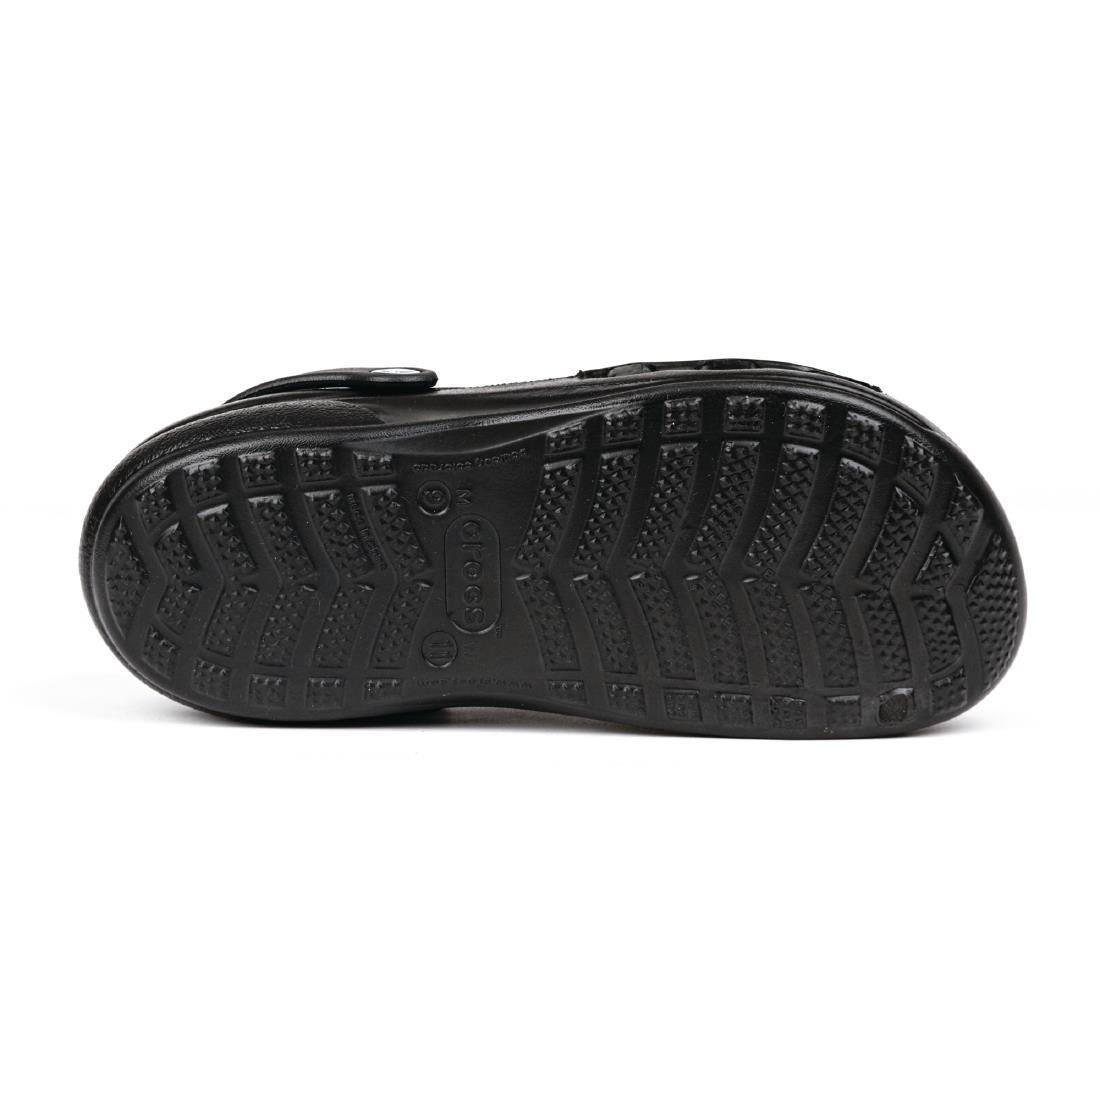 Crocs Specialist Vent Clogs Black 45.5 - A478-45.5  - 4